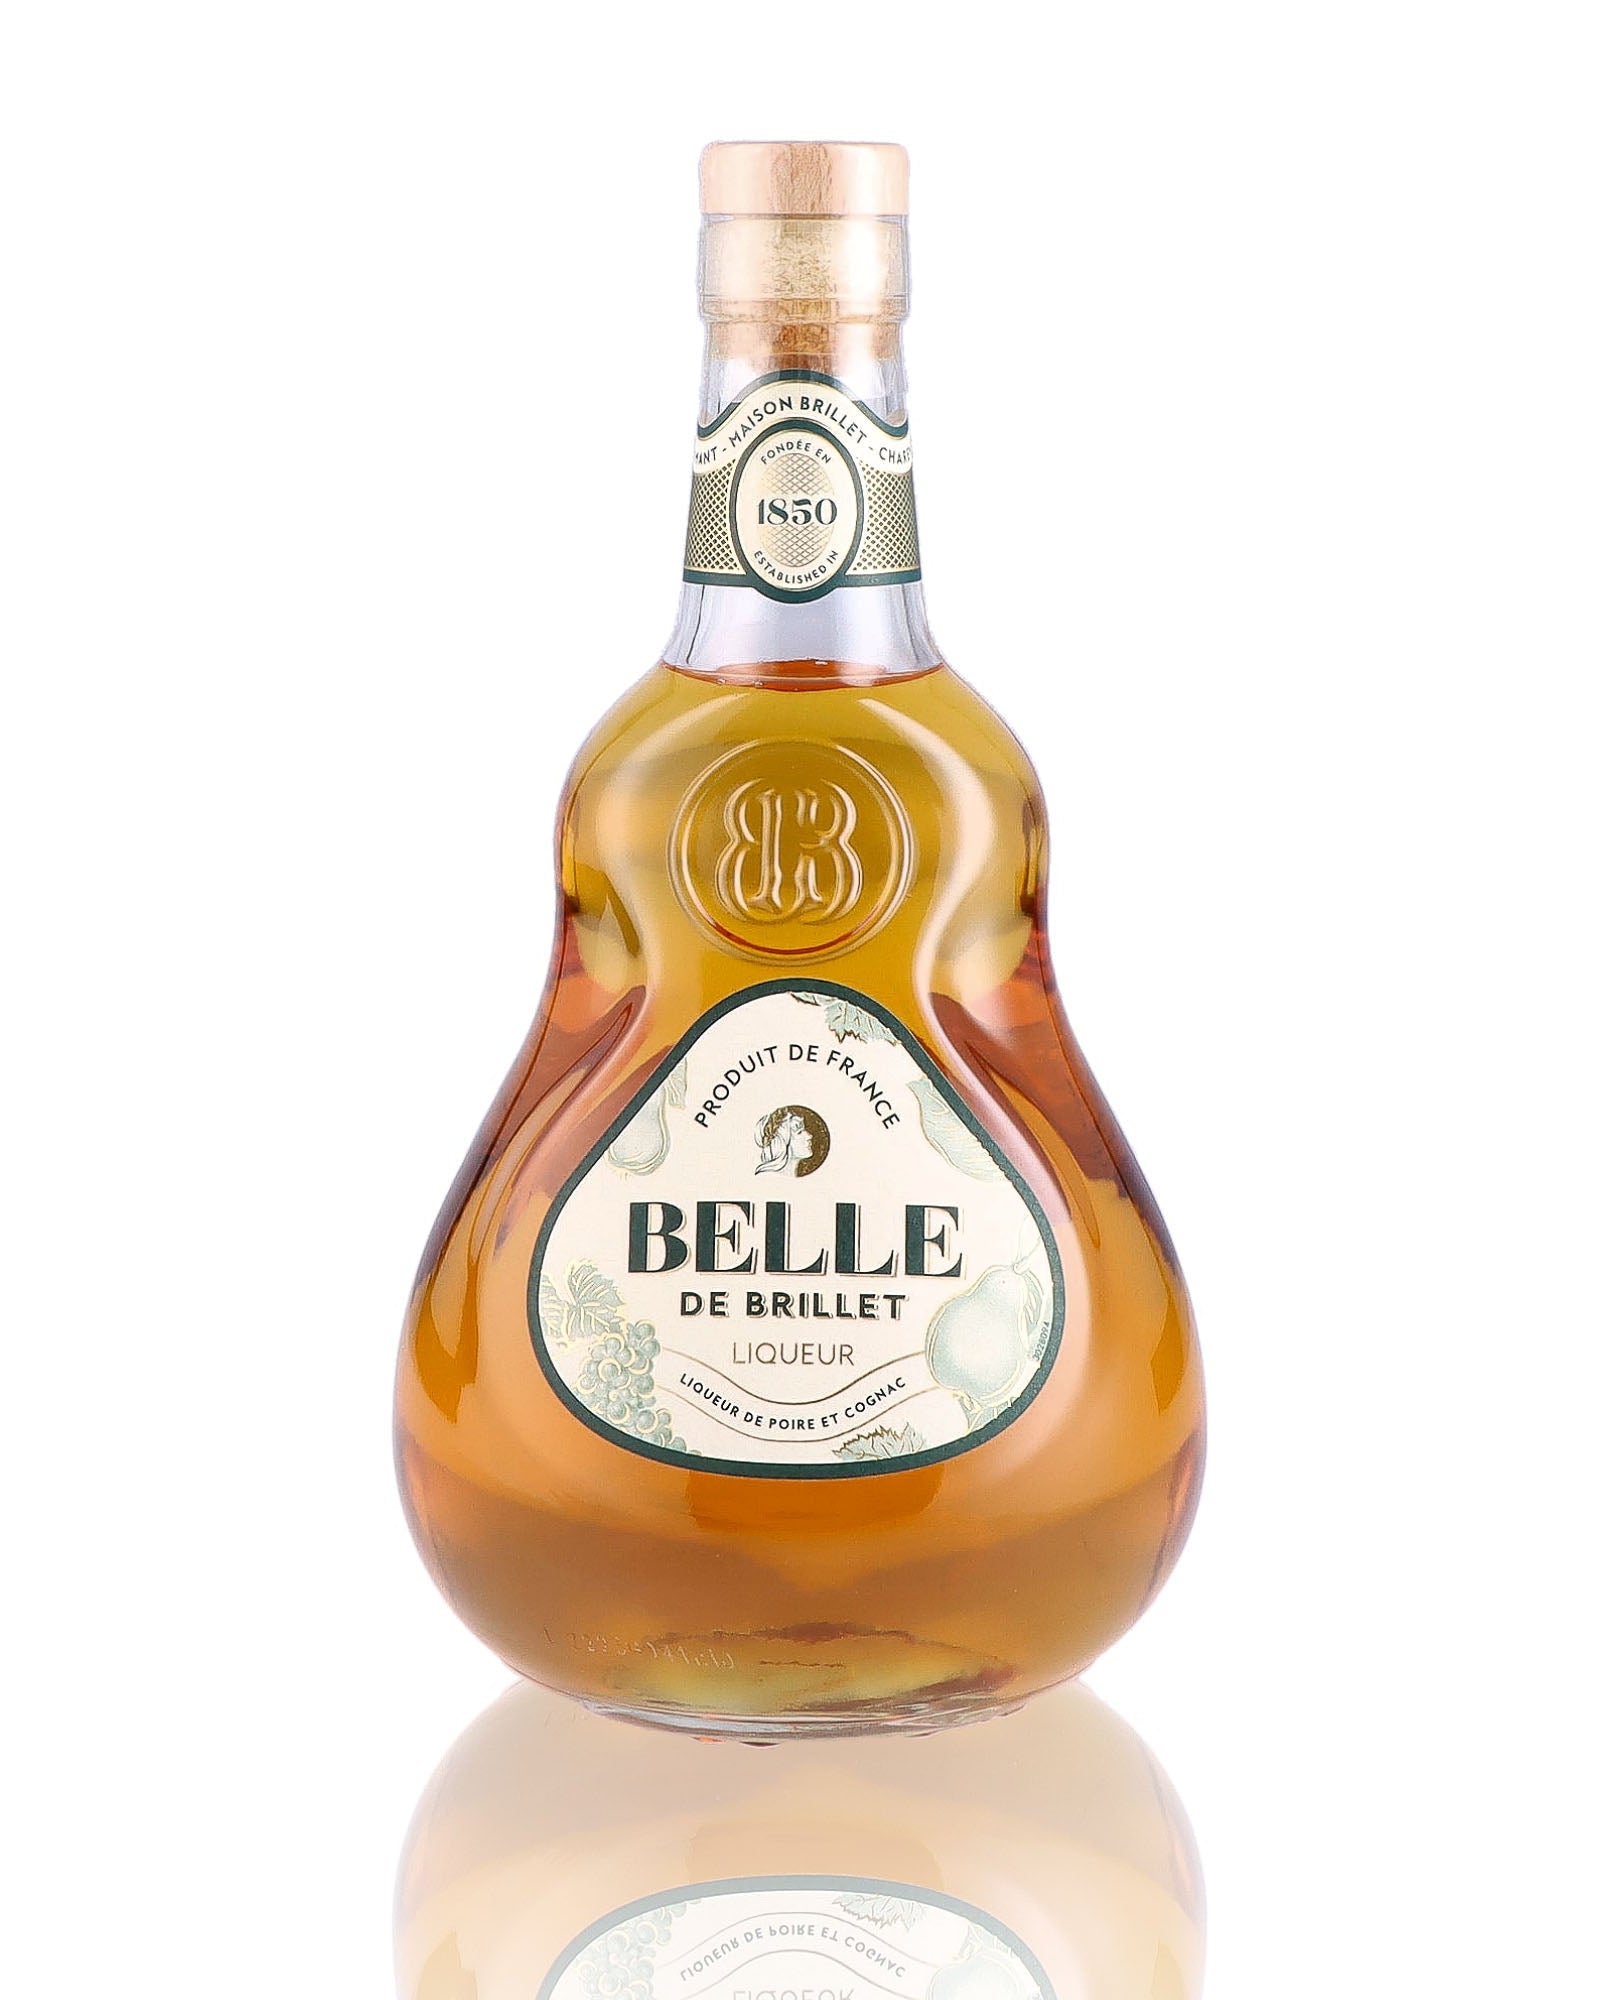 Une bouteille de Liqueur, de la marque Belle de Brillet, nommée Poire et Cognac.